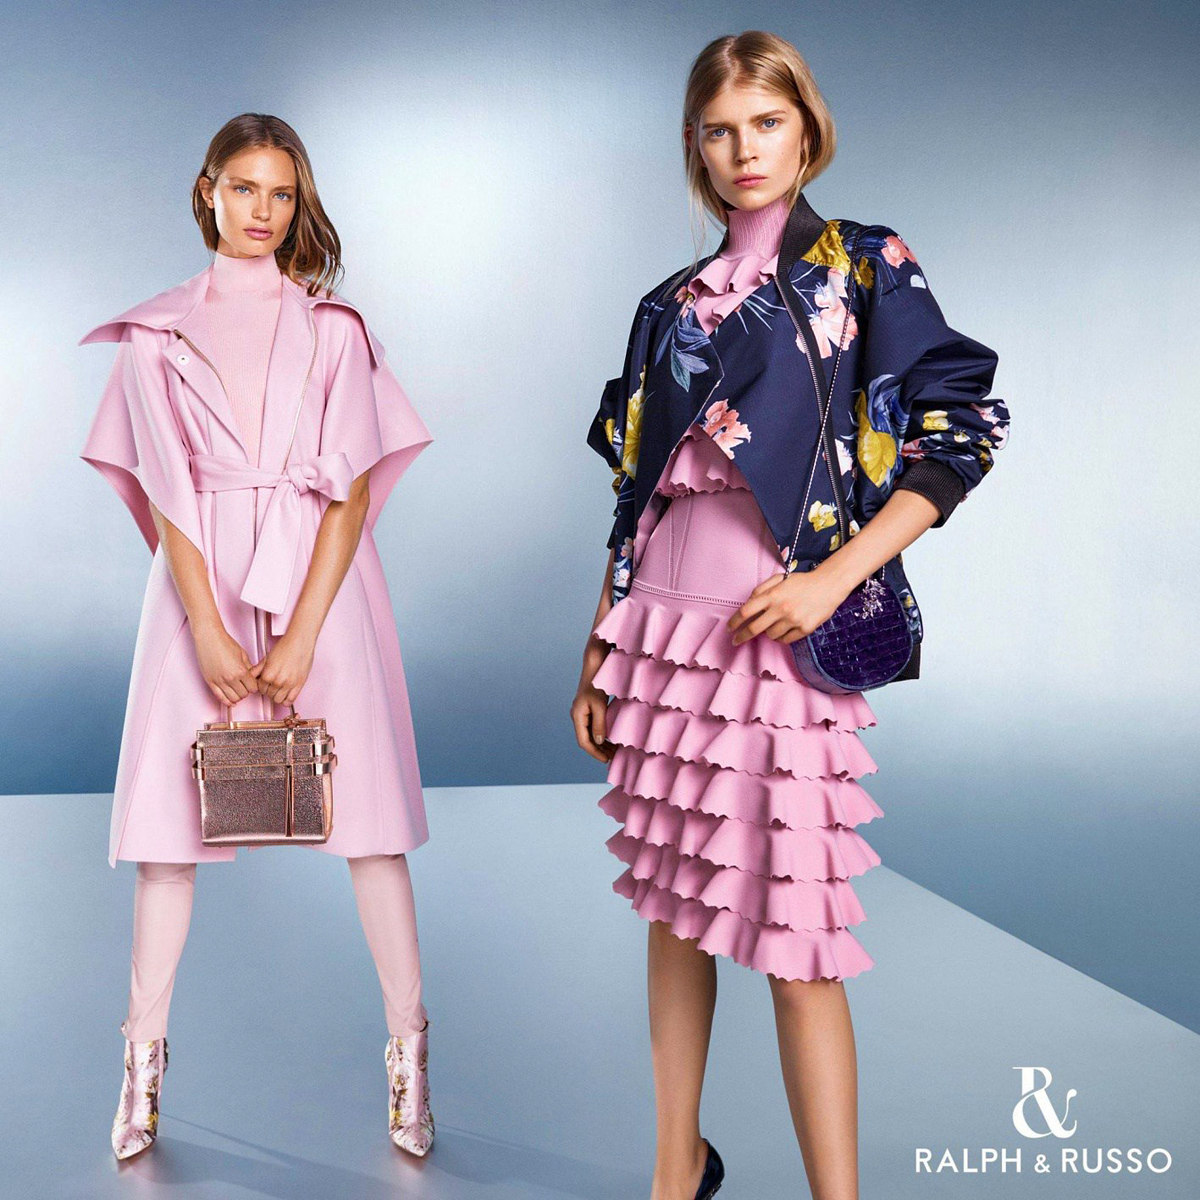 Krémes pasztellszínek és színes virágminták jönnek, ahogy azt a Ralph & Russo reklámfotóján is láthatjuk.<br />